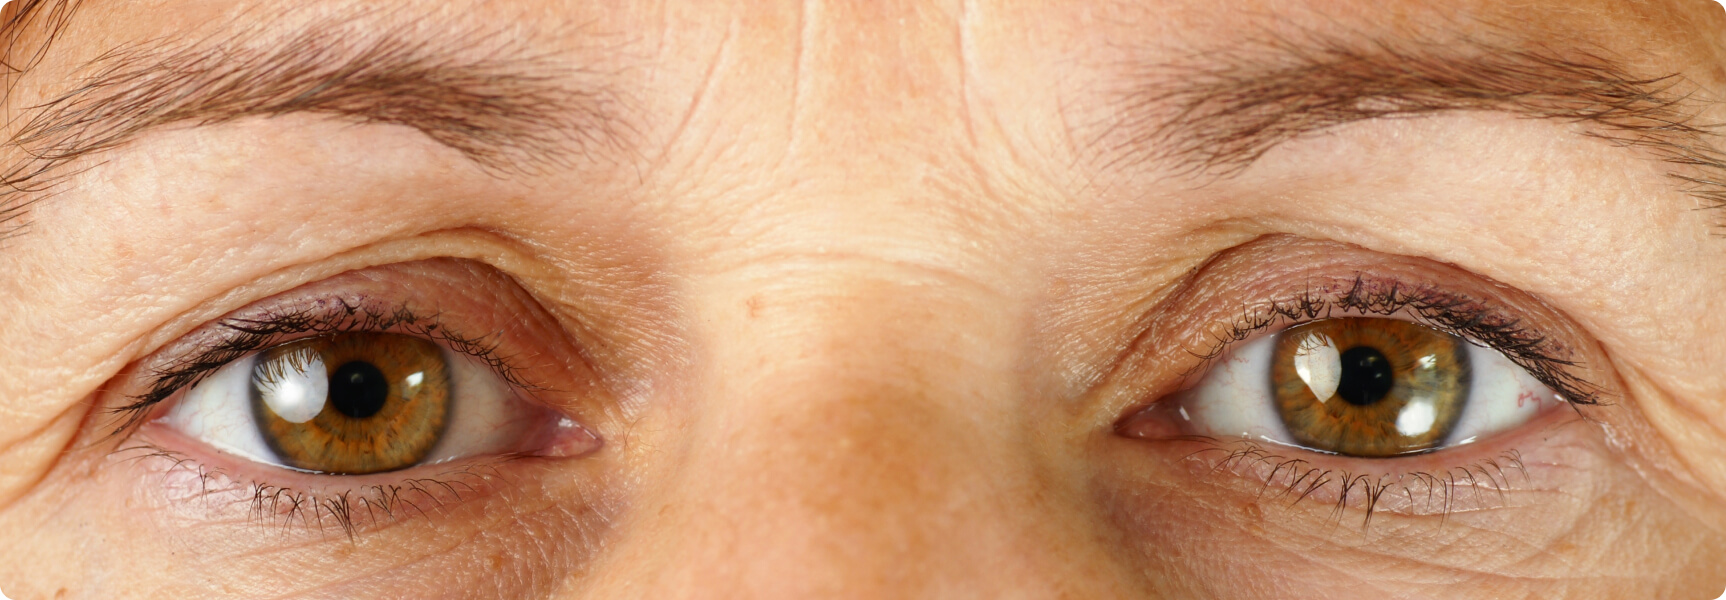 Augenlidstraffung - Wann ist eine operative Lidkorrektur sinnvoll?